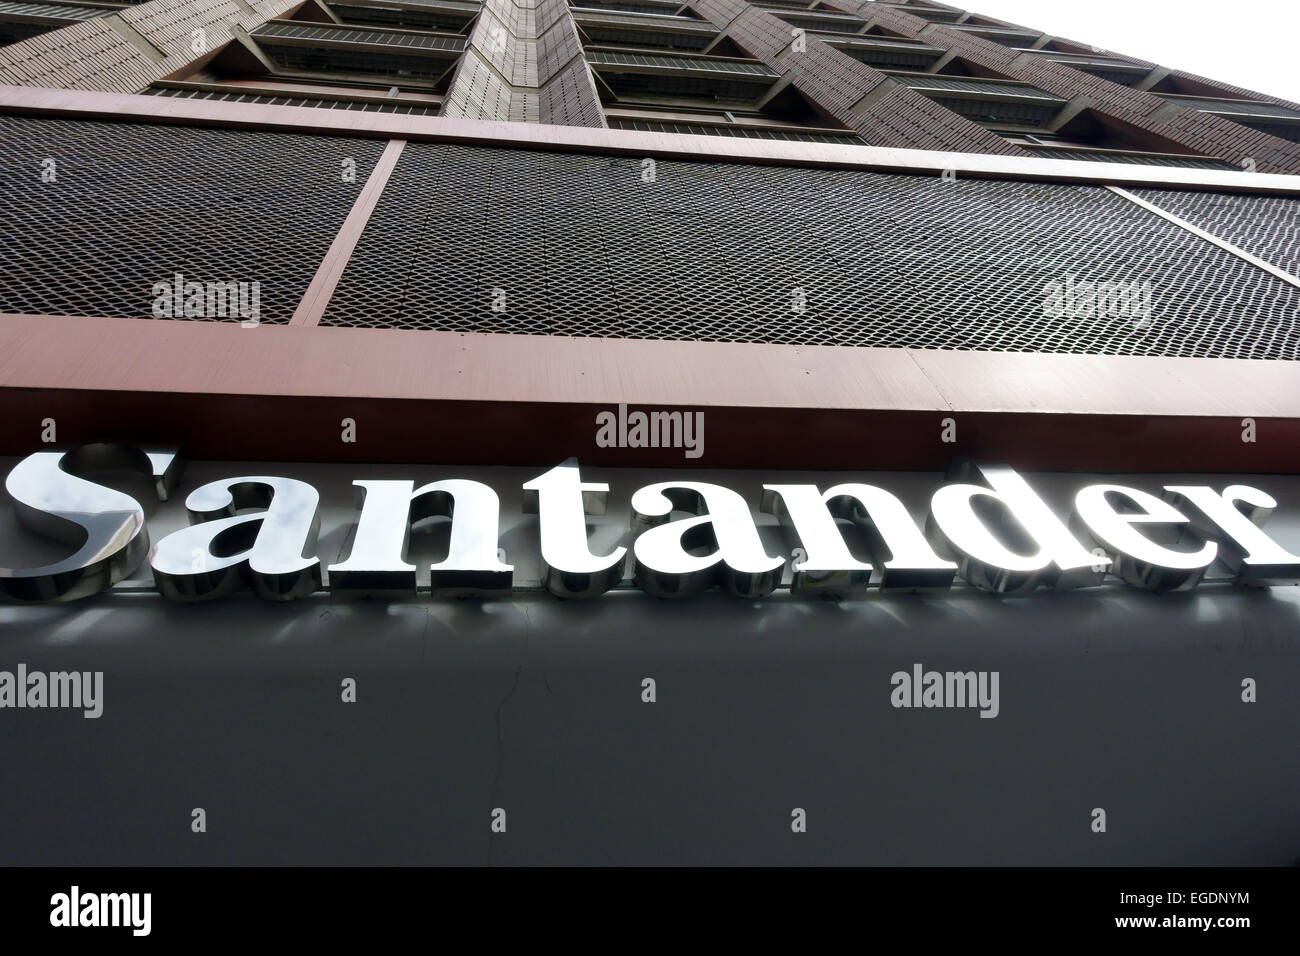 Branch of Spanish bank Santander in Las Palmas de Gran Canaria, Spain Stock Photo